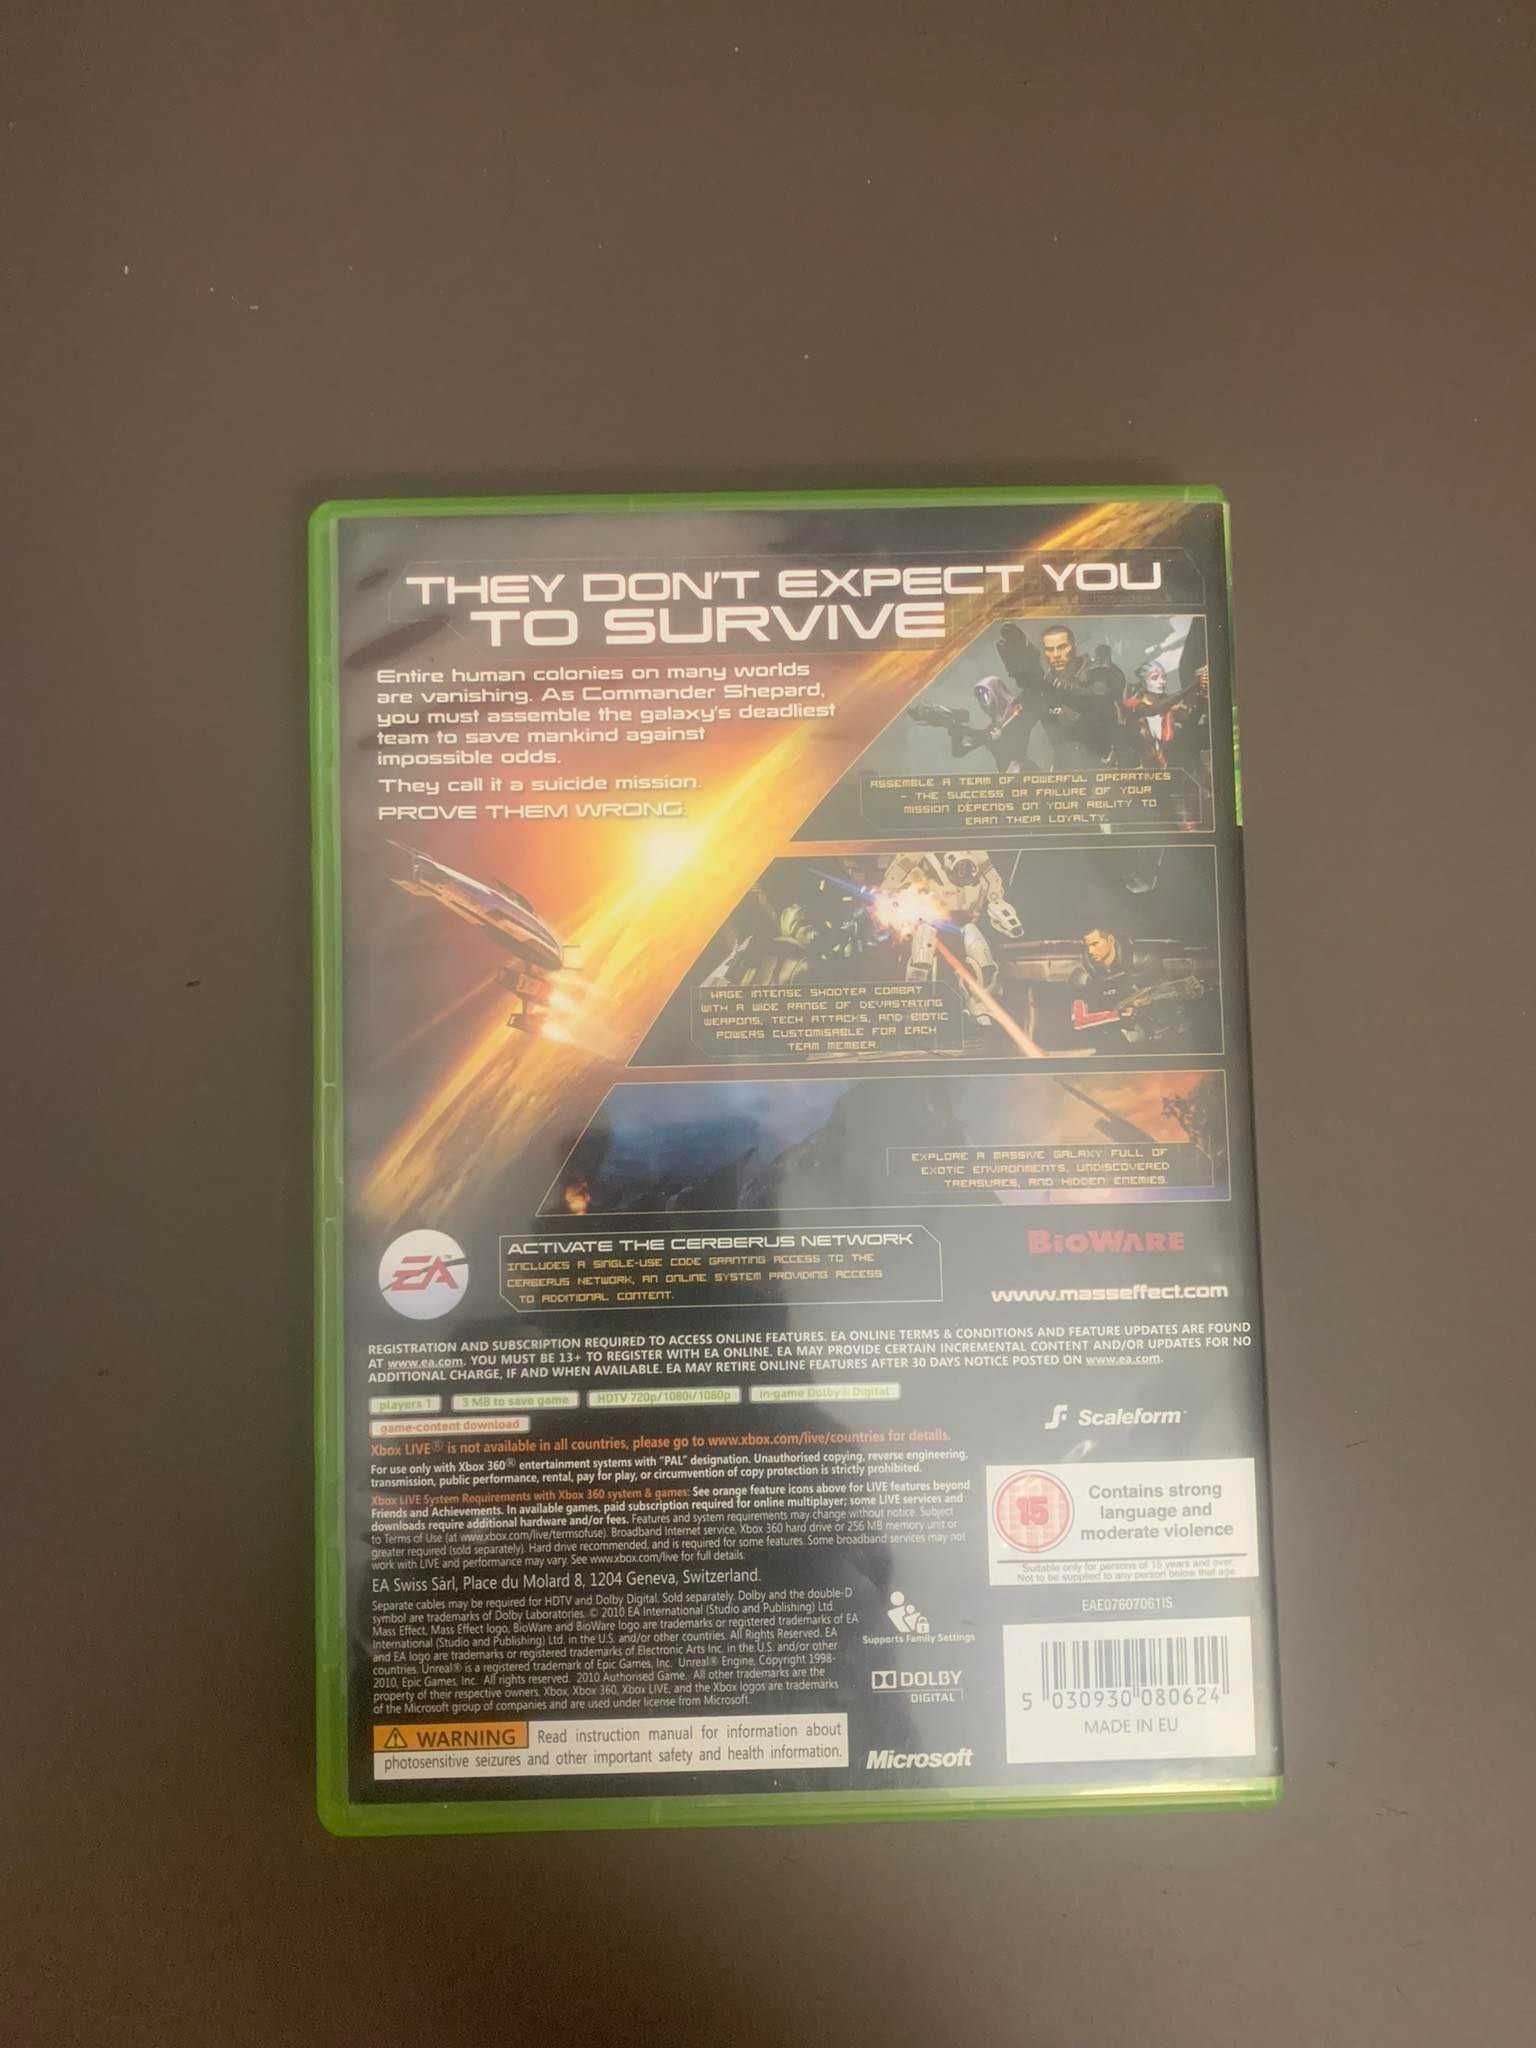 Gra MASS EFFECT 2 Xbox 360 Xbox One S Xbox Series X